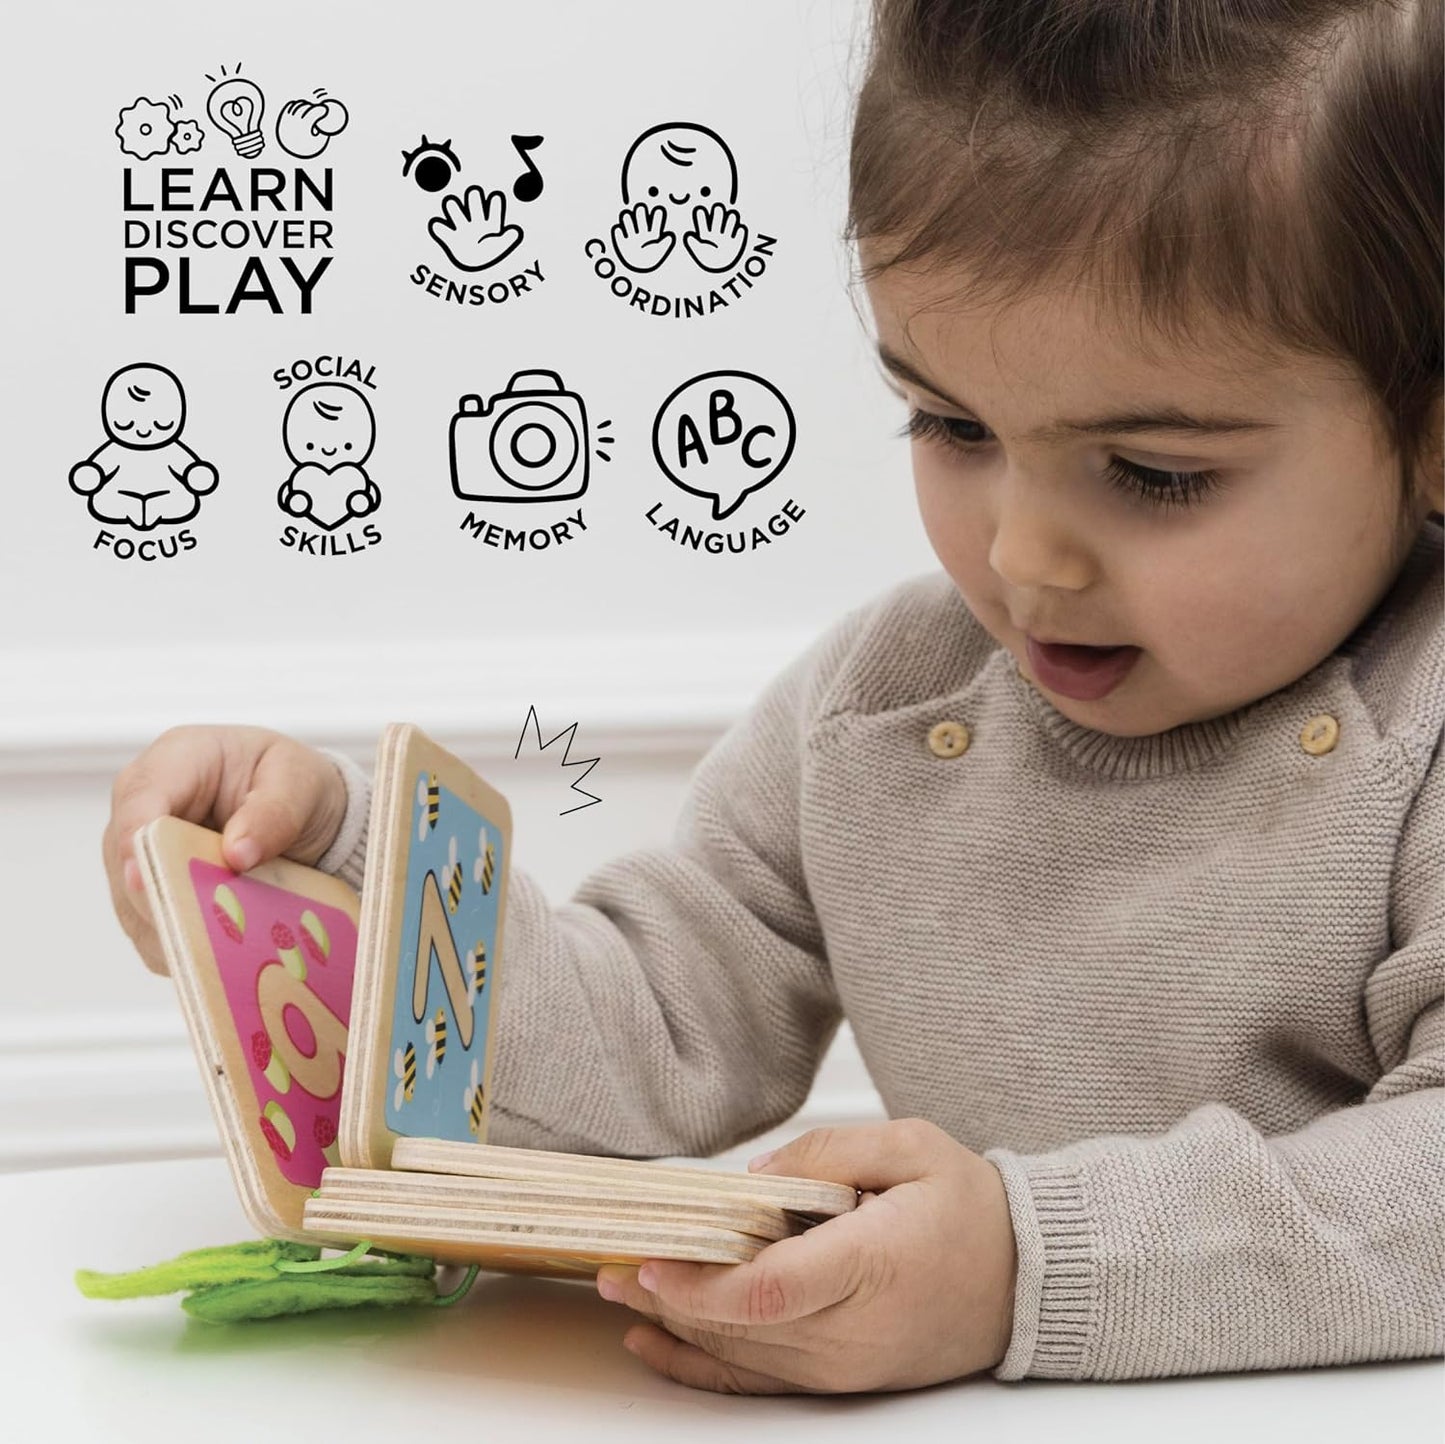 Le Toy Van - Livro de contagem de madeira colorido multissensorial educacional de madeira Petilou para reconhecimento de números para crianças e bebês | Adequado para menino ou menina de 1 ano +